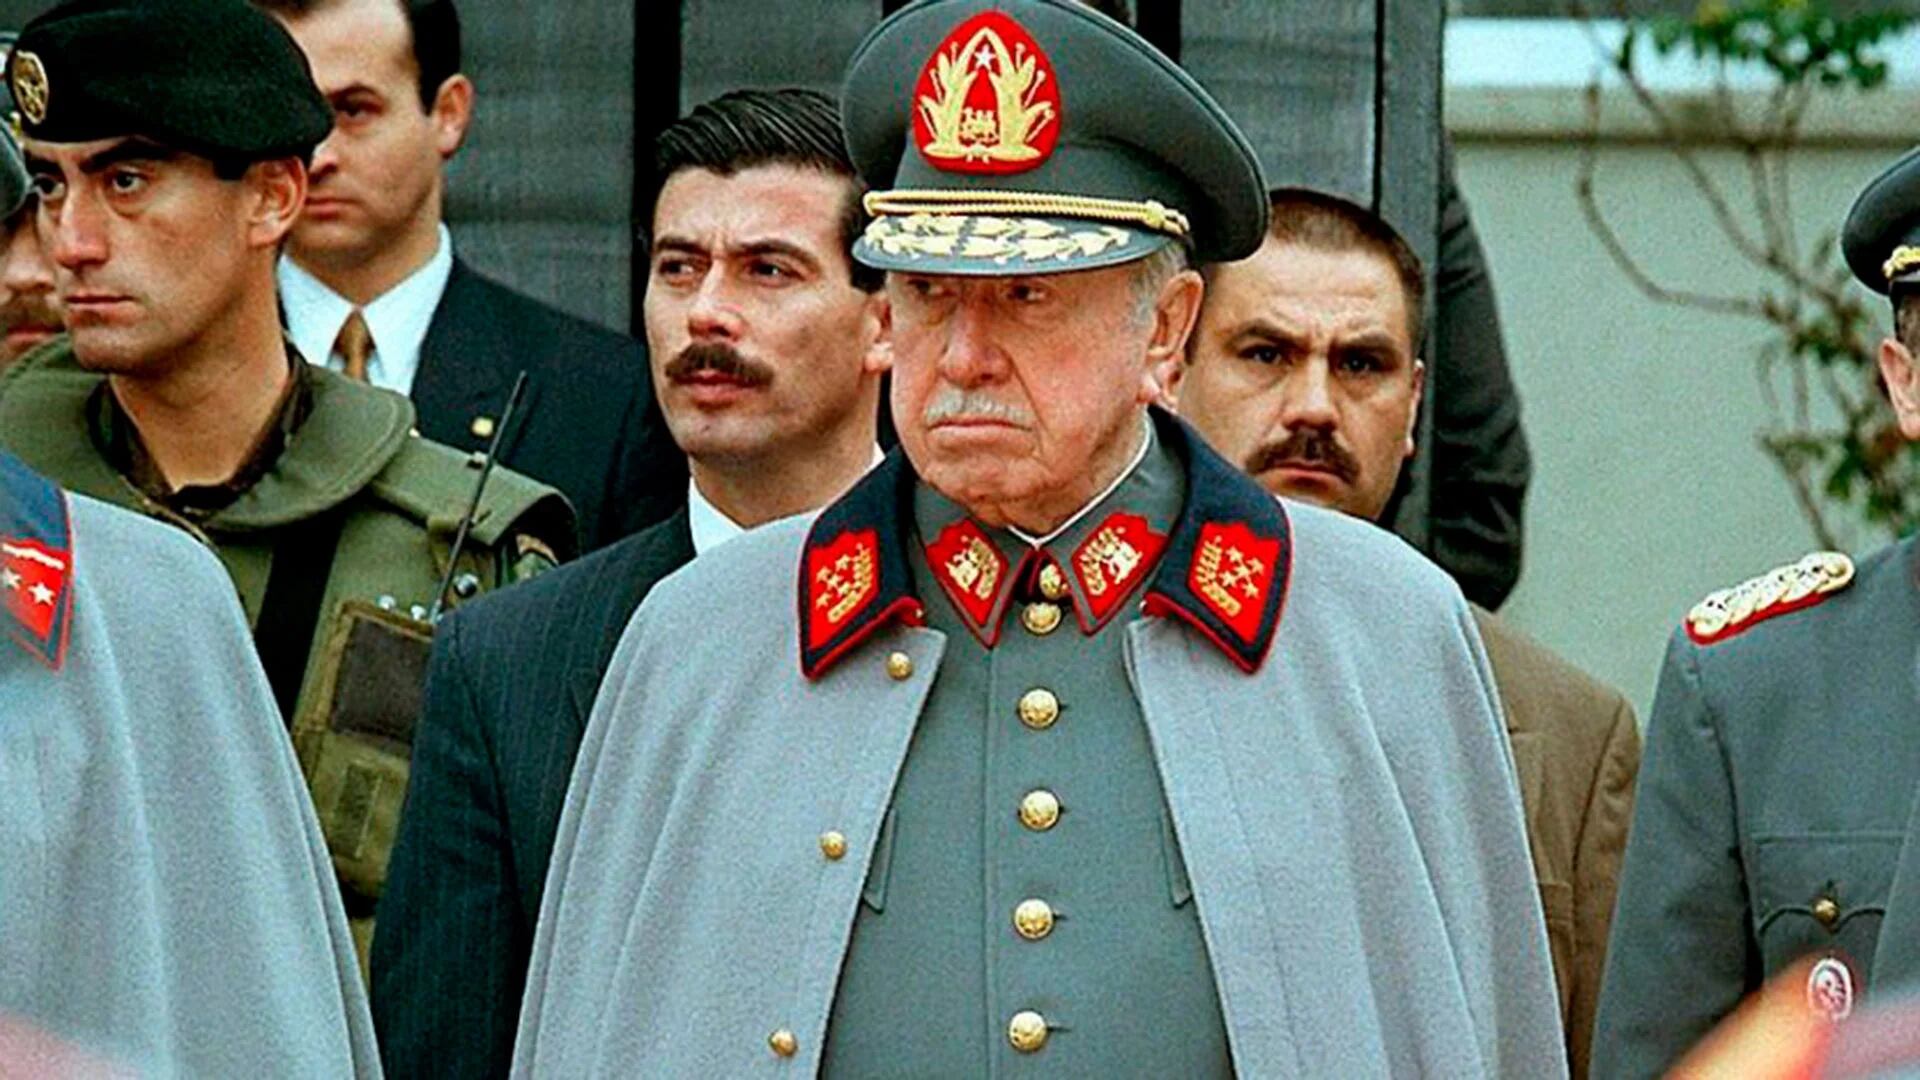 La Biblioteca del Congreso chileno quitó el cargo de Presidente a la reseña oficial sobre Pinochet